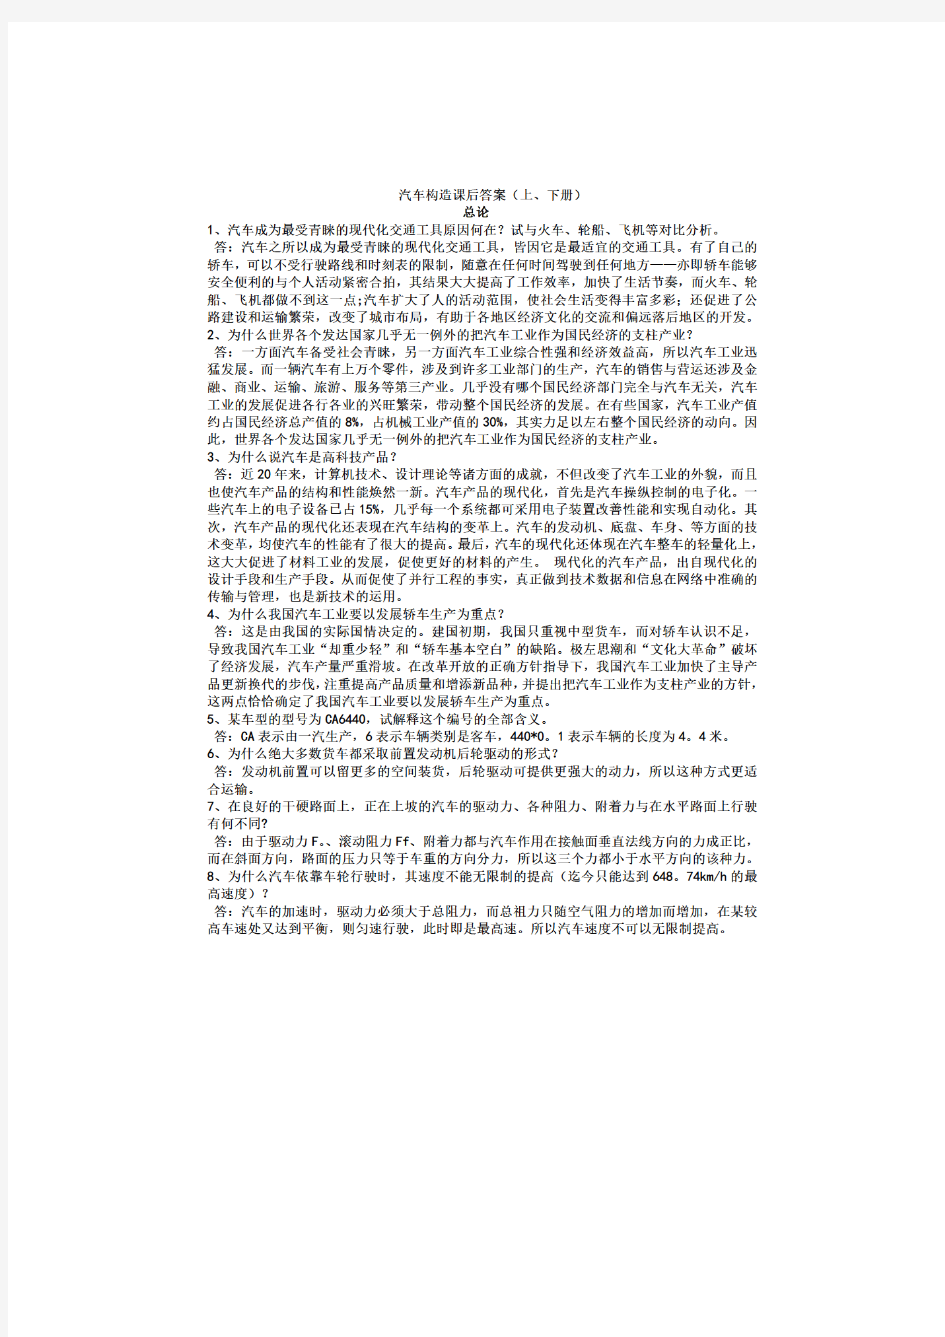 2865_汽车构造(第三版)(上册) 总论 陈家瑞 编,机械工业出版社